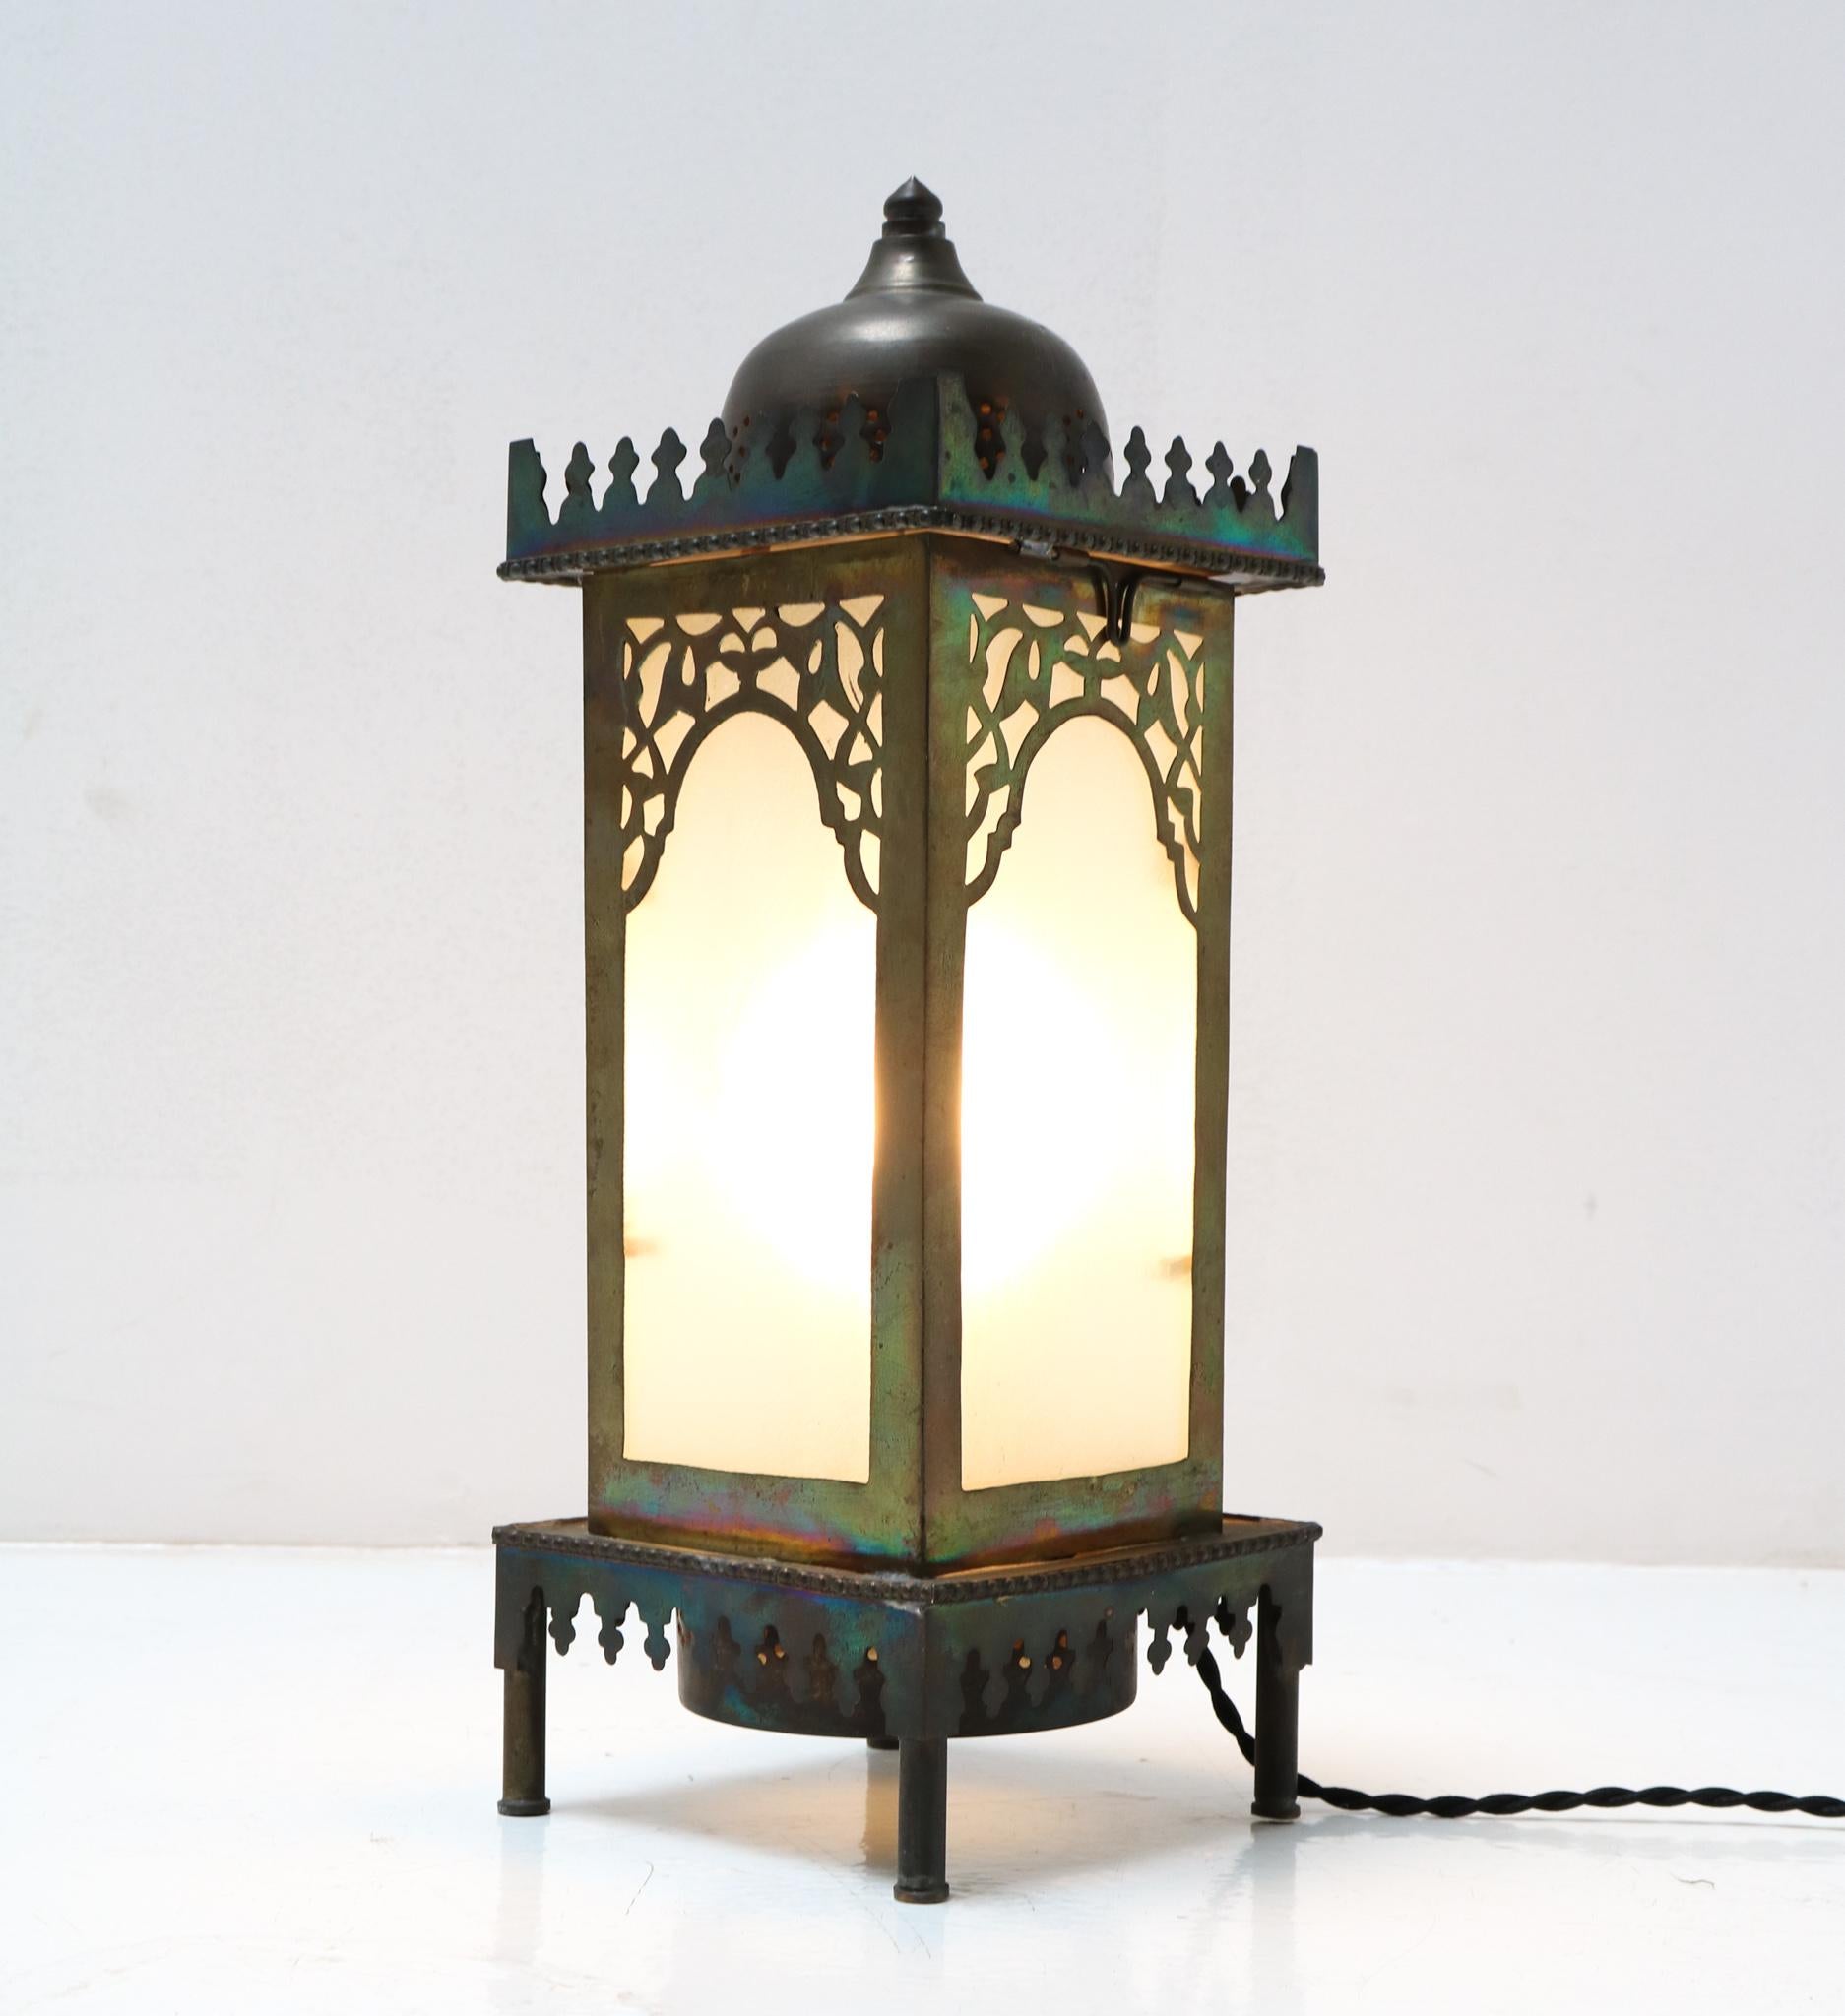 Atemberaubende und seltene Arts & Crafts Jugendstil-Tischlampe.
Auffälliges niederländisches Design aus den 1900er Jahren.
Patinierter Messingrahmen mit originalen Glasschirmen.
Neu verkabelt mit Originalfassung für E-14-Glühbirne.
Diese